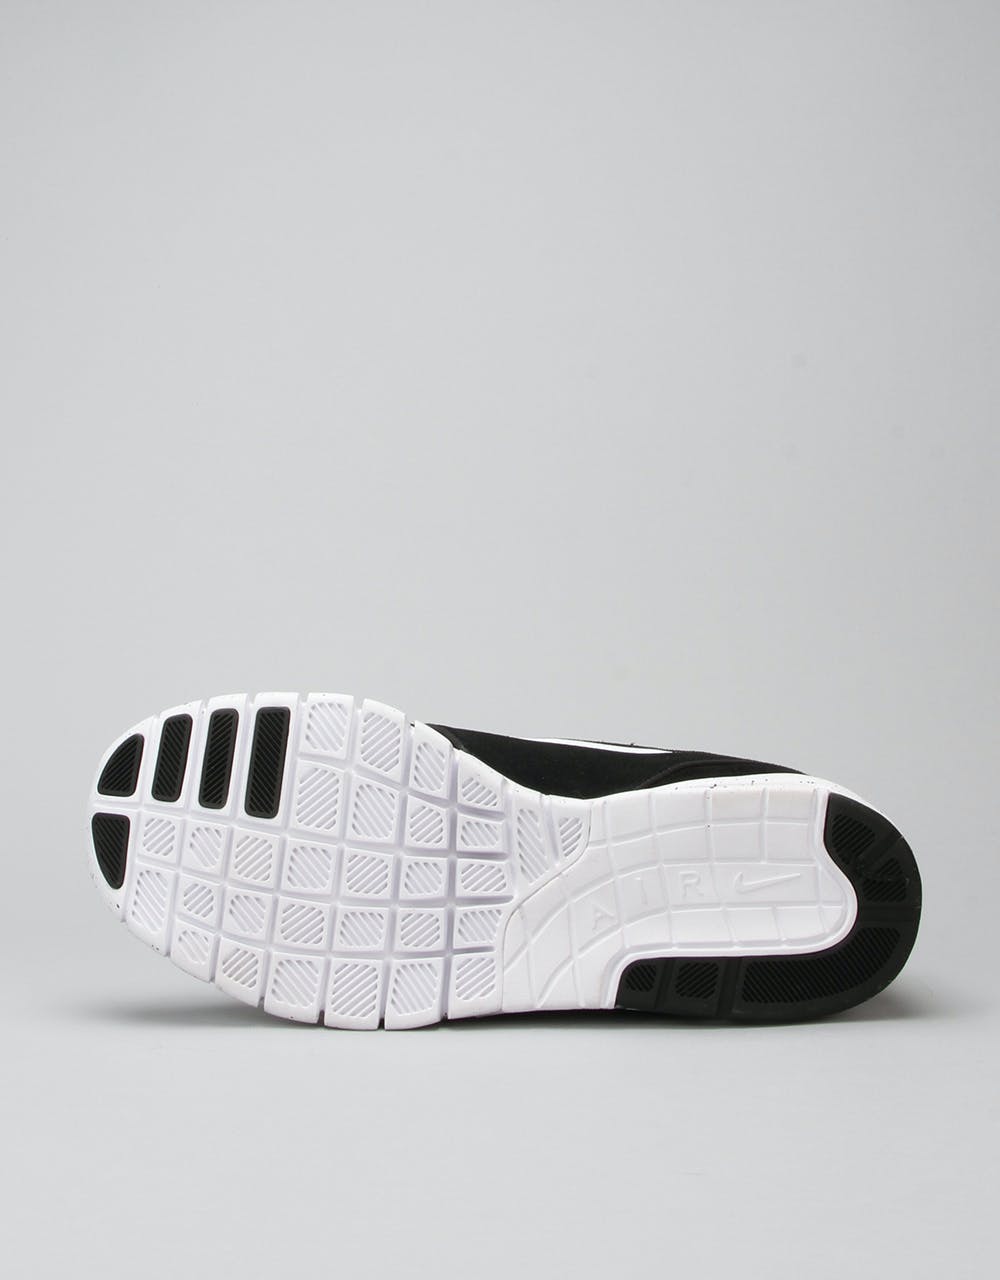 Nike SB Stefan Janoski Max Suede Shoes - Black/White